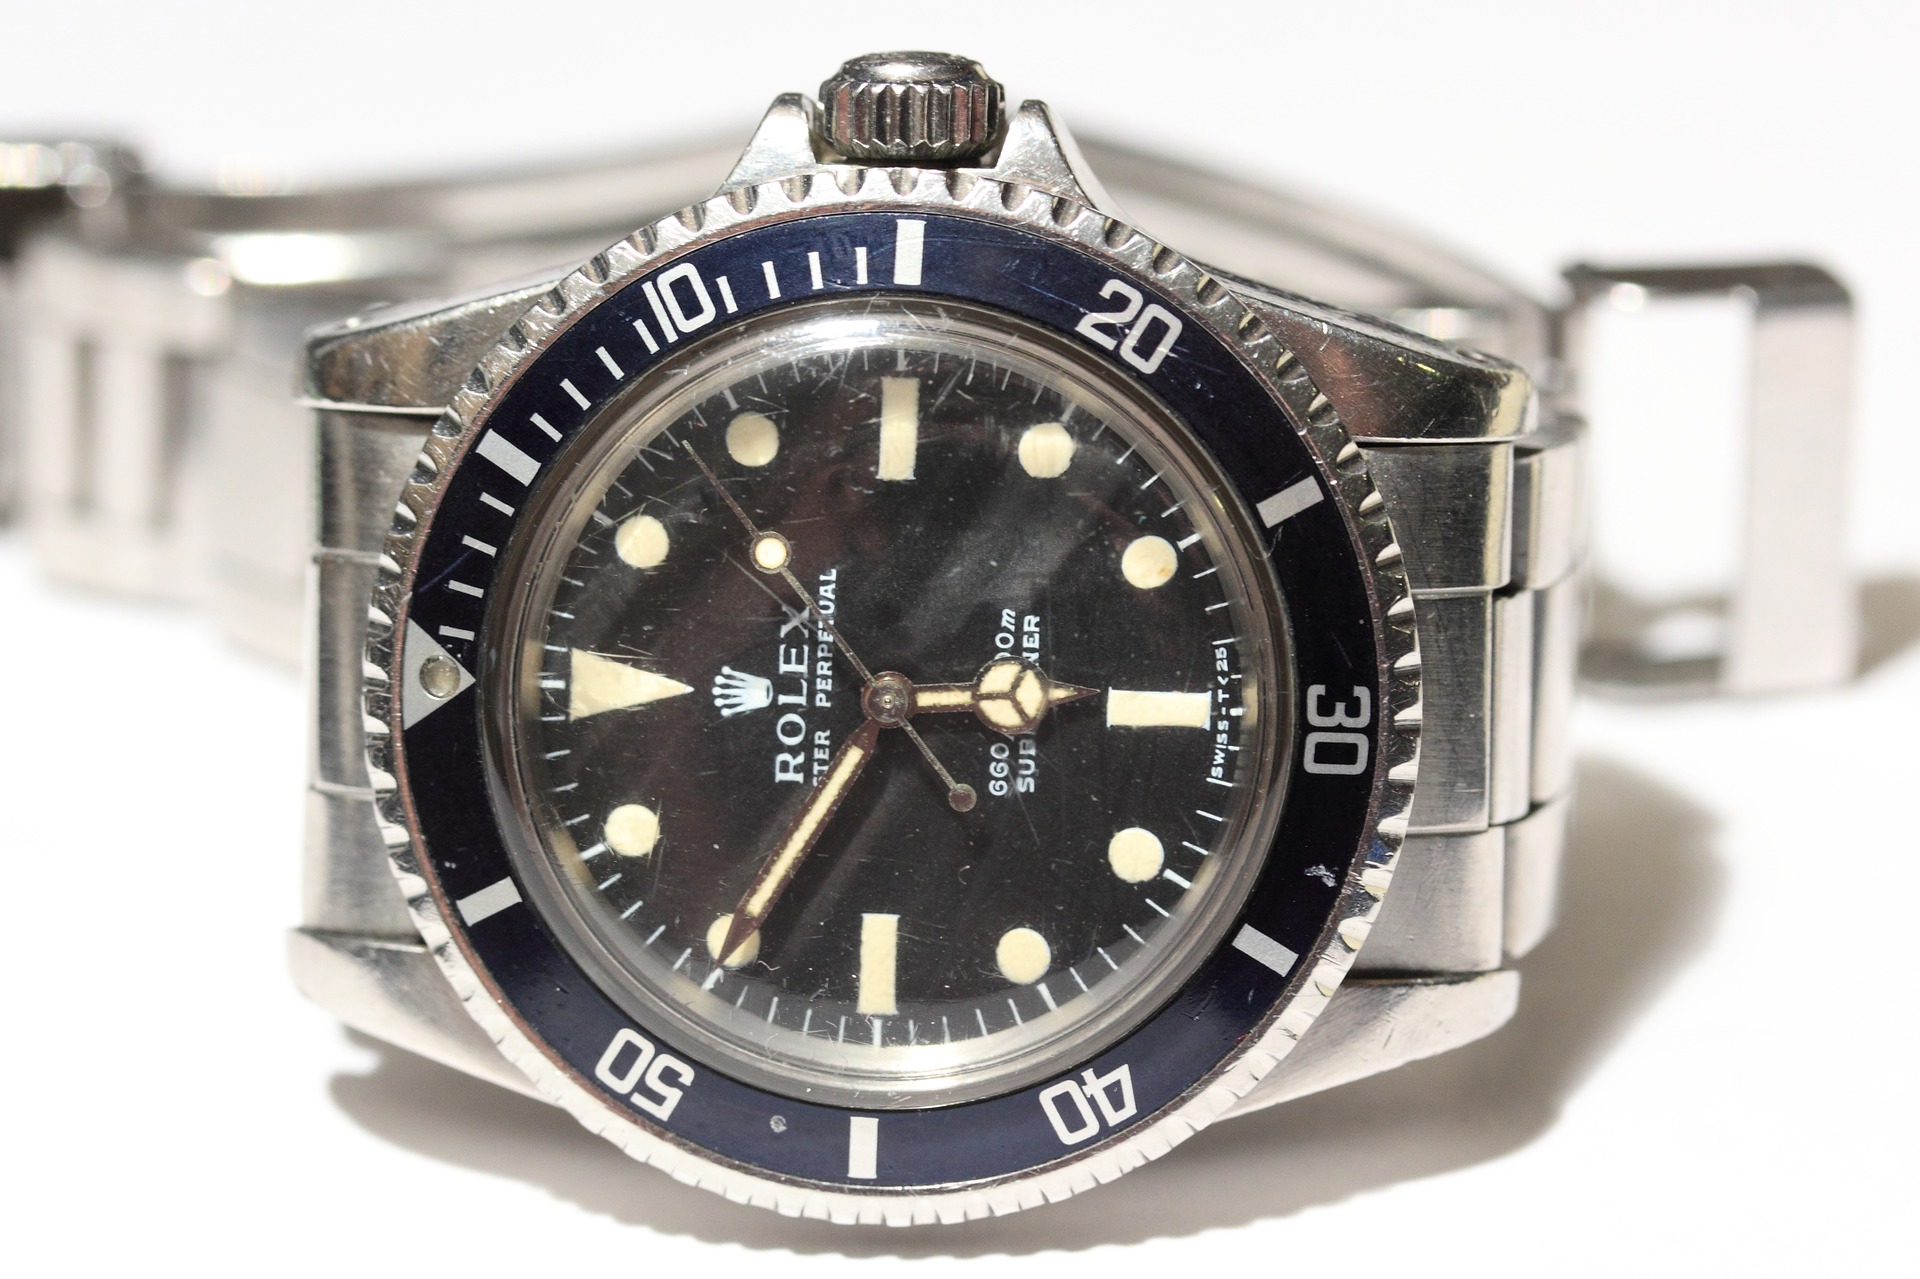 Rolex Oyster Perpetual Uhren Blog Beliebtesten Uhrenmarken Uhrenmodelle